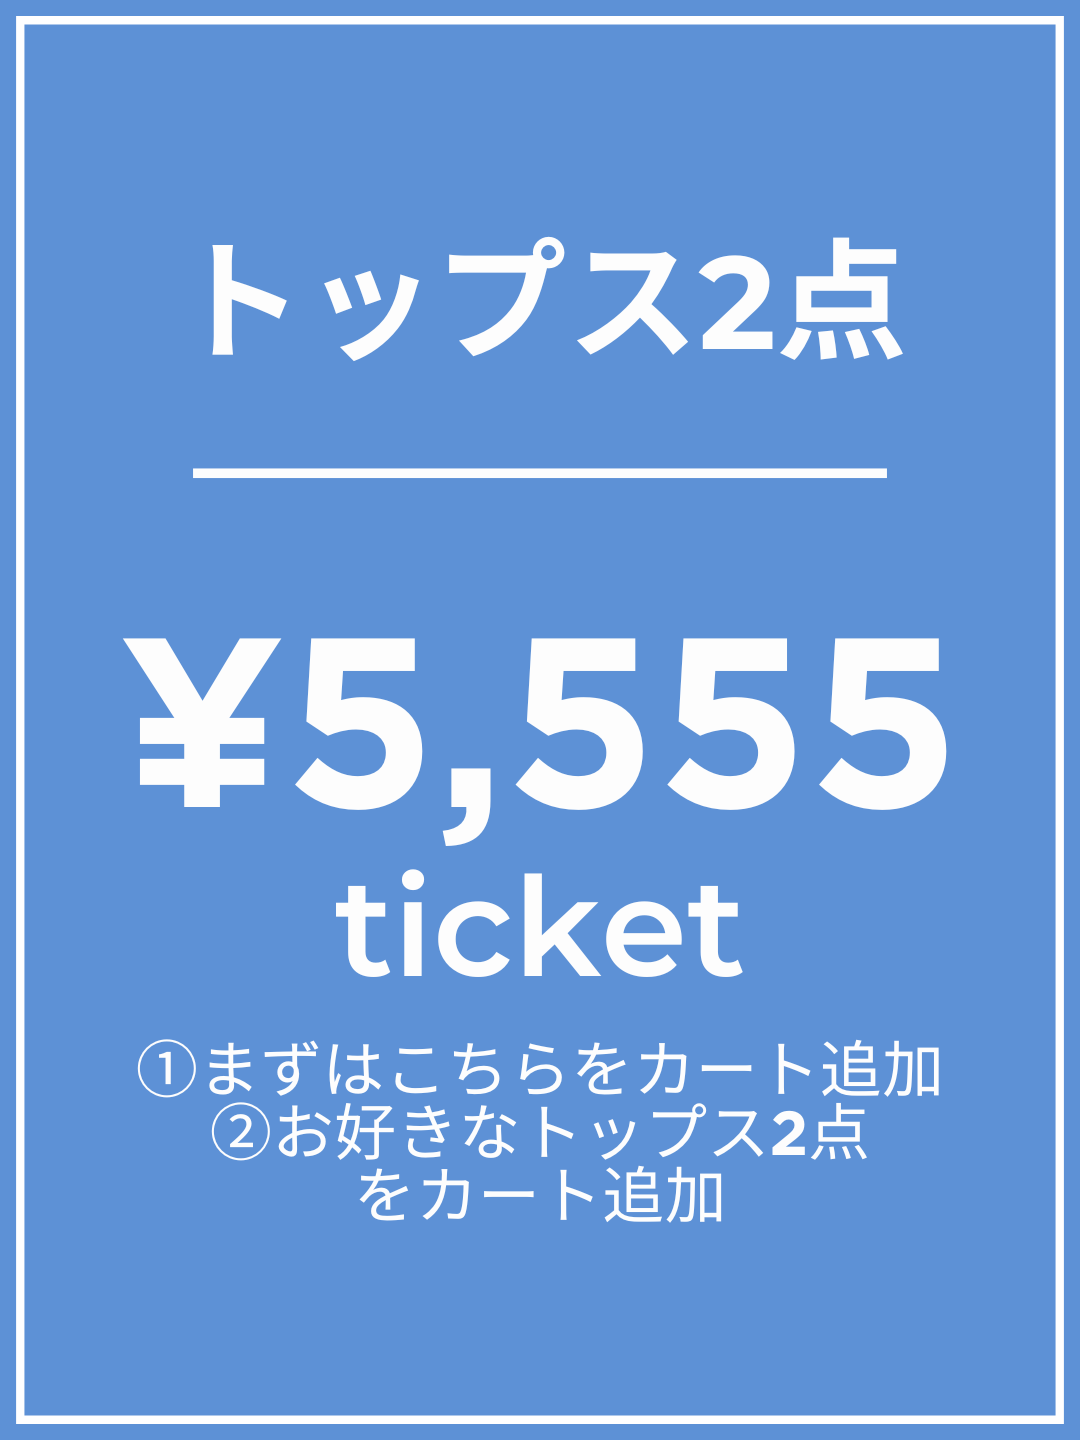 【1番初めにこちらをカートイン】¥5,555チケット